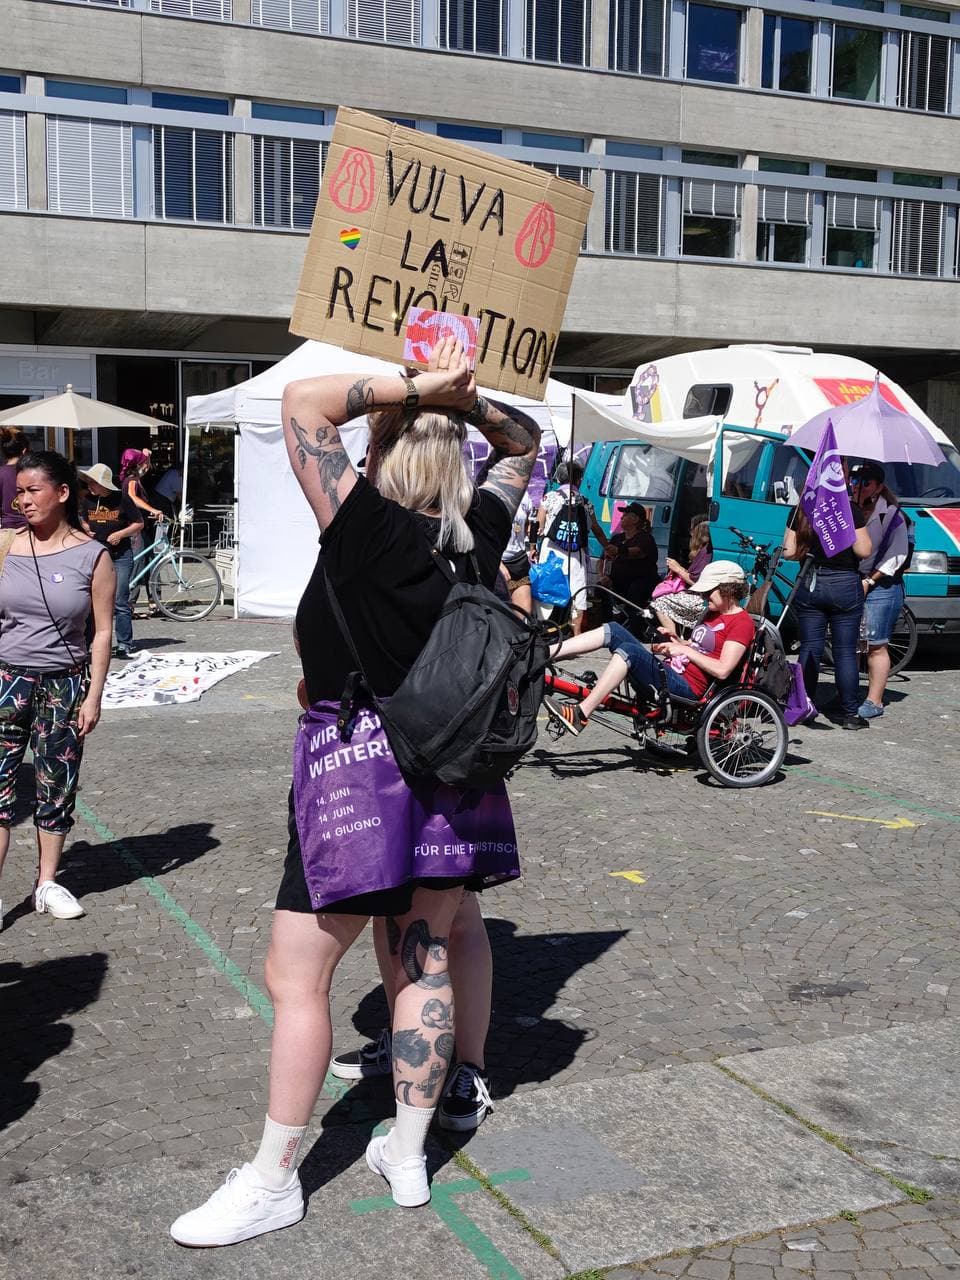 Eine Person hätl auf dem Ni Una Menos Platz ein Schild hoch auf dem Steht "Vulva La Revolution" verzierz mit stilisierten Zeichnungen von Vulvas. Sie hat eine Streikfahne umgebunden. Im Hintergrund ist der Wagen von Radio Lora zu sehen.